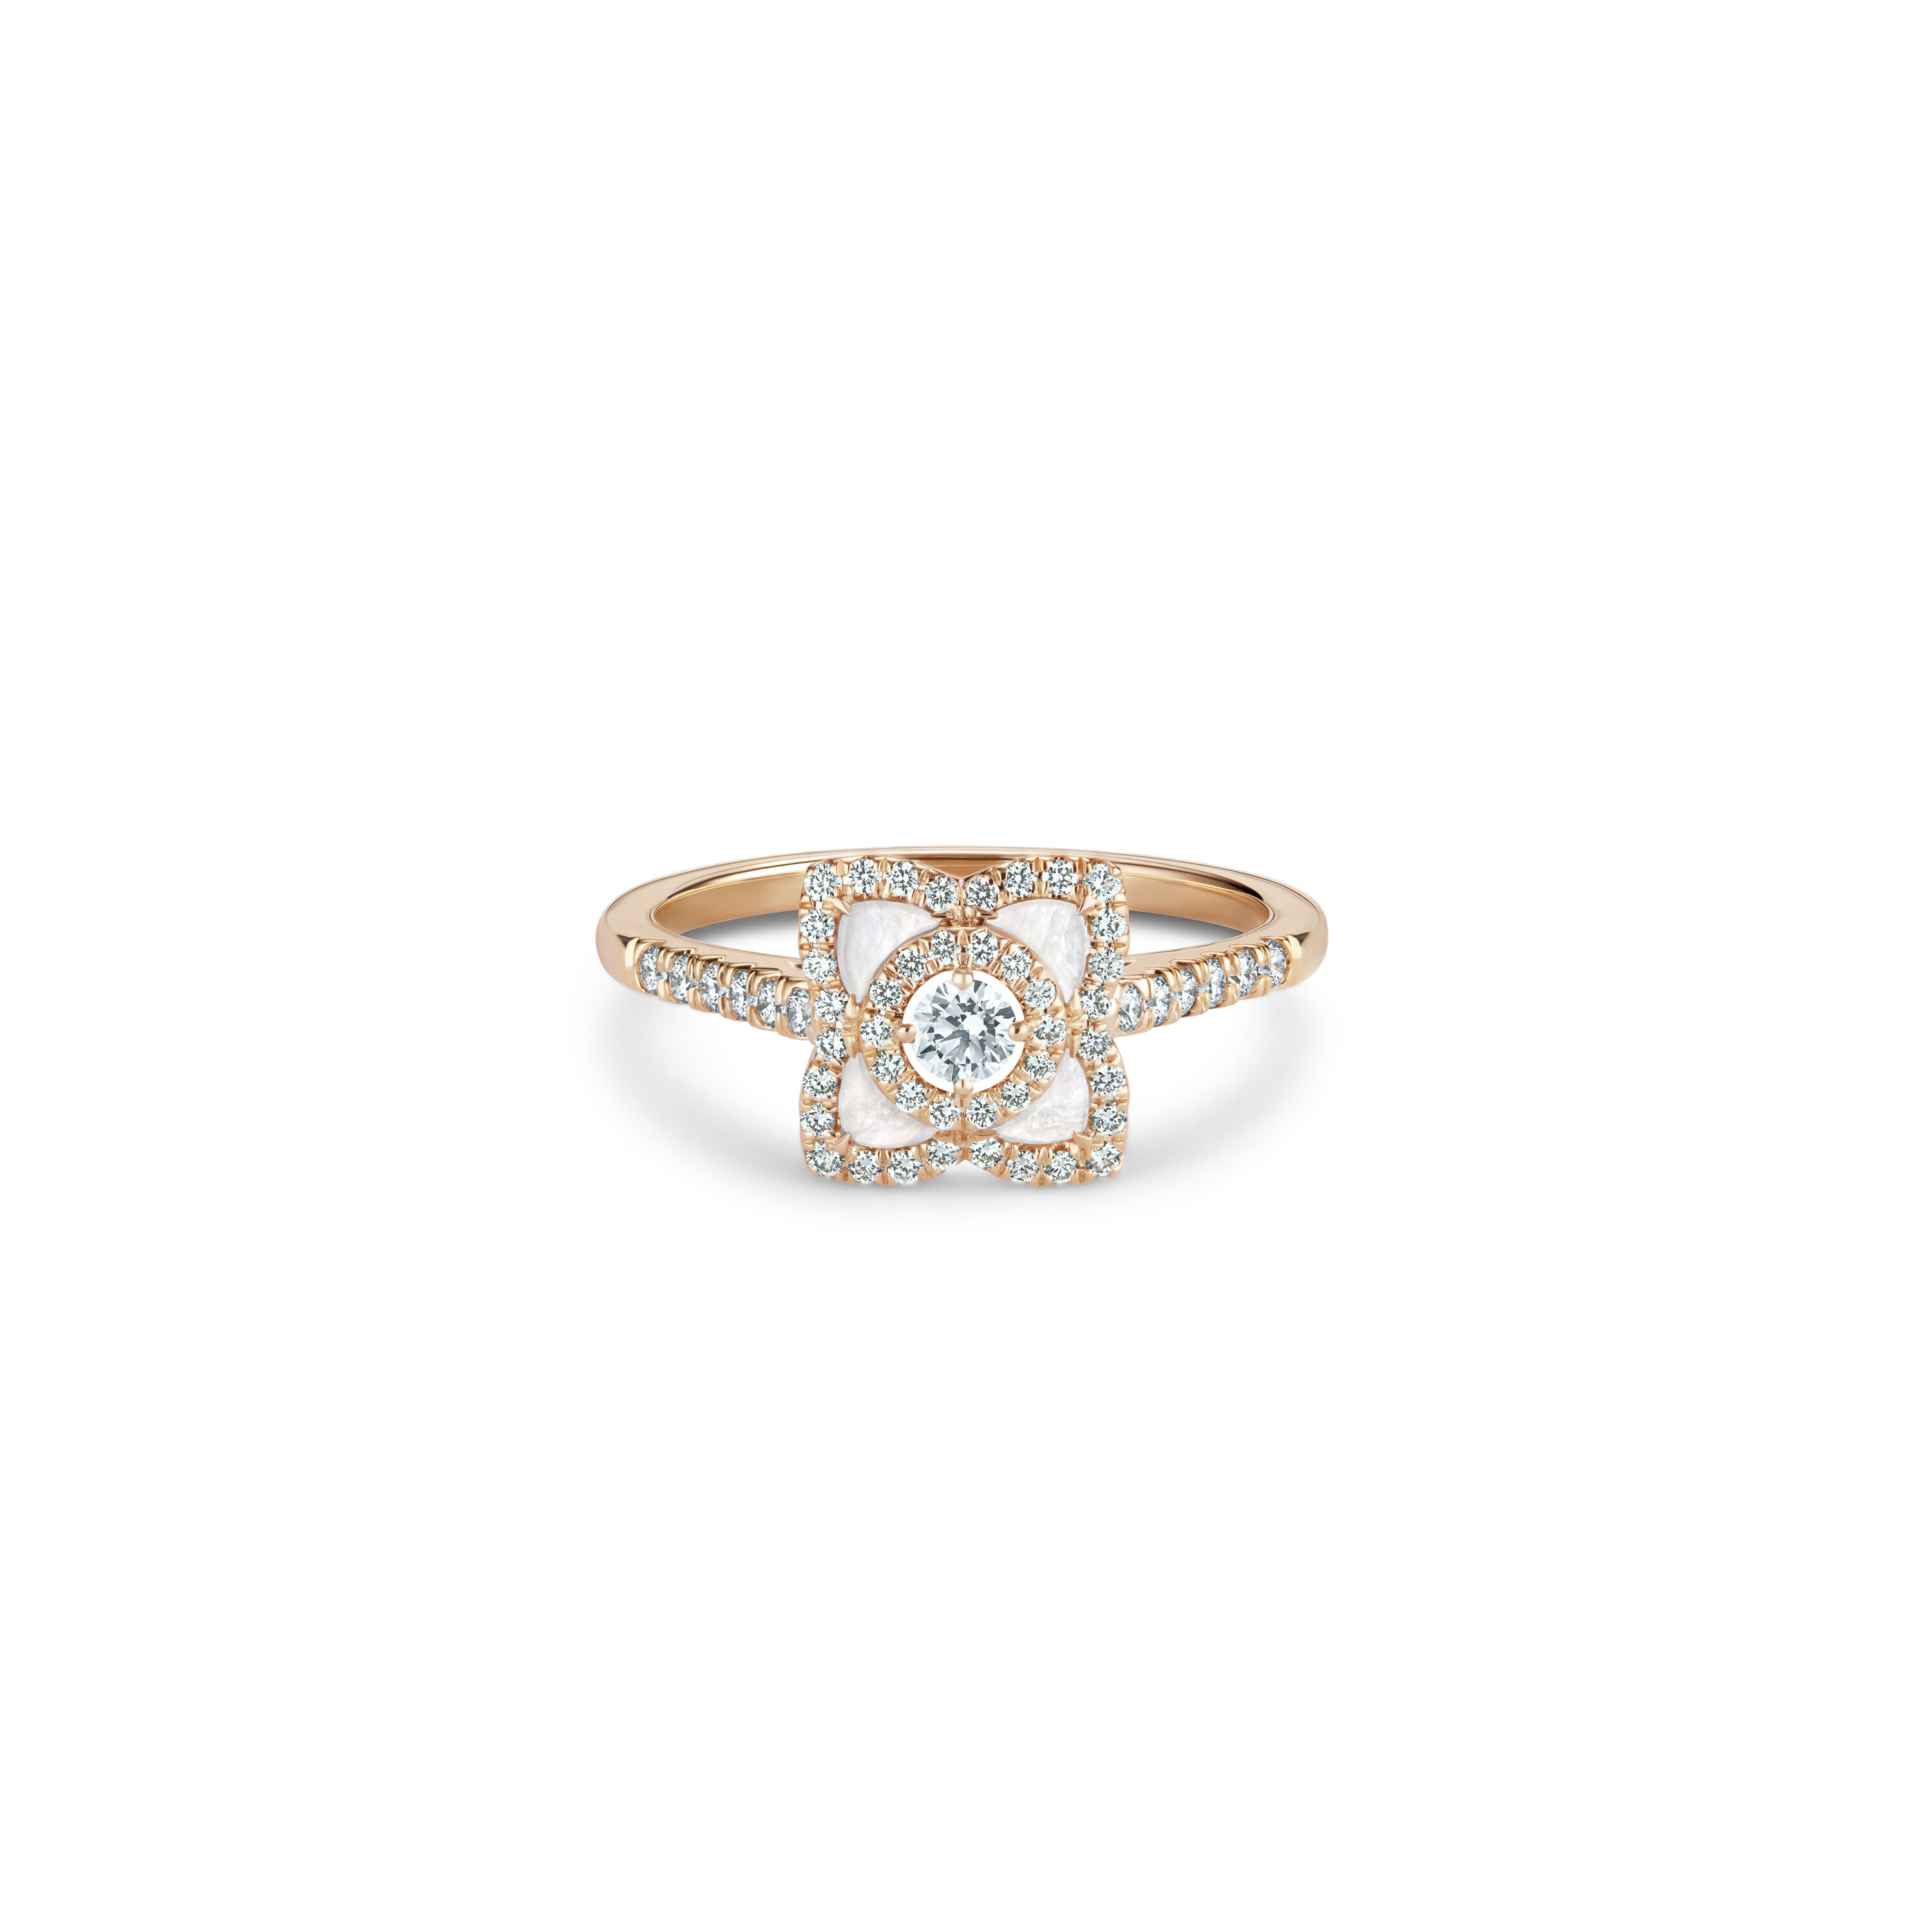 戒指上的簡約蓮花圖騰，除了閃爍美鑽還飾有柔美的珍珠貝母，優雅脫俗